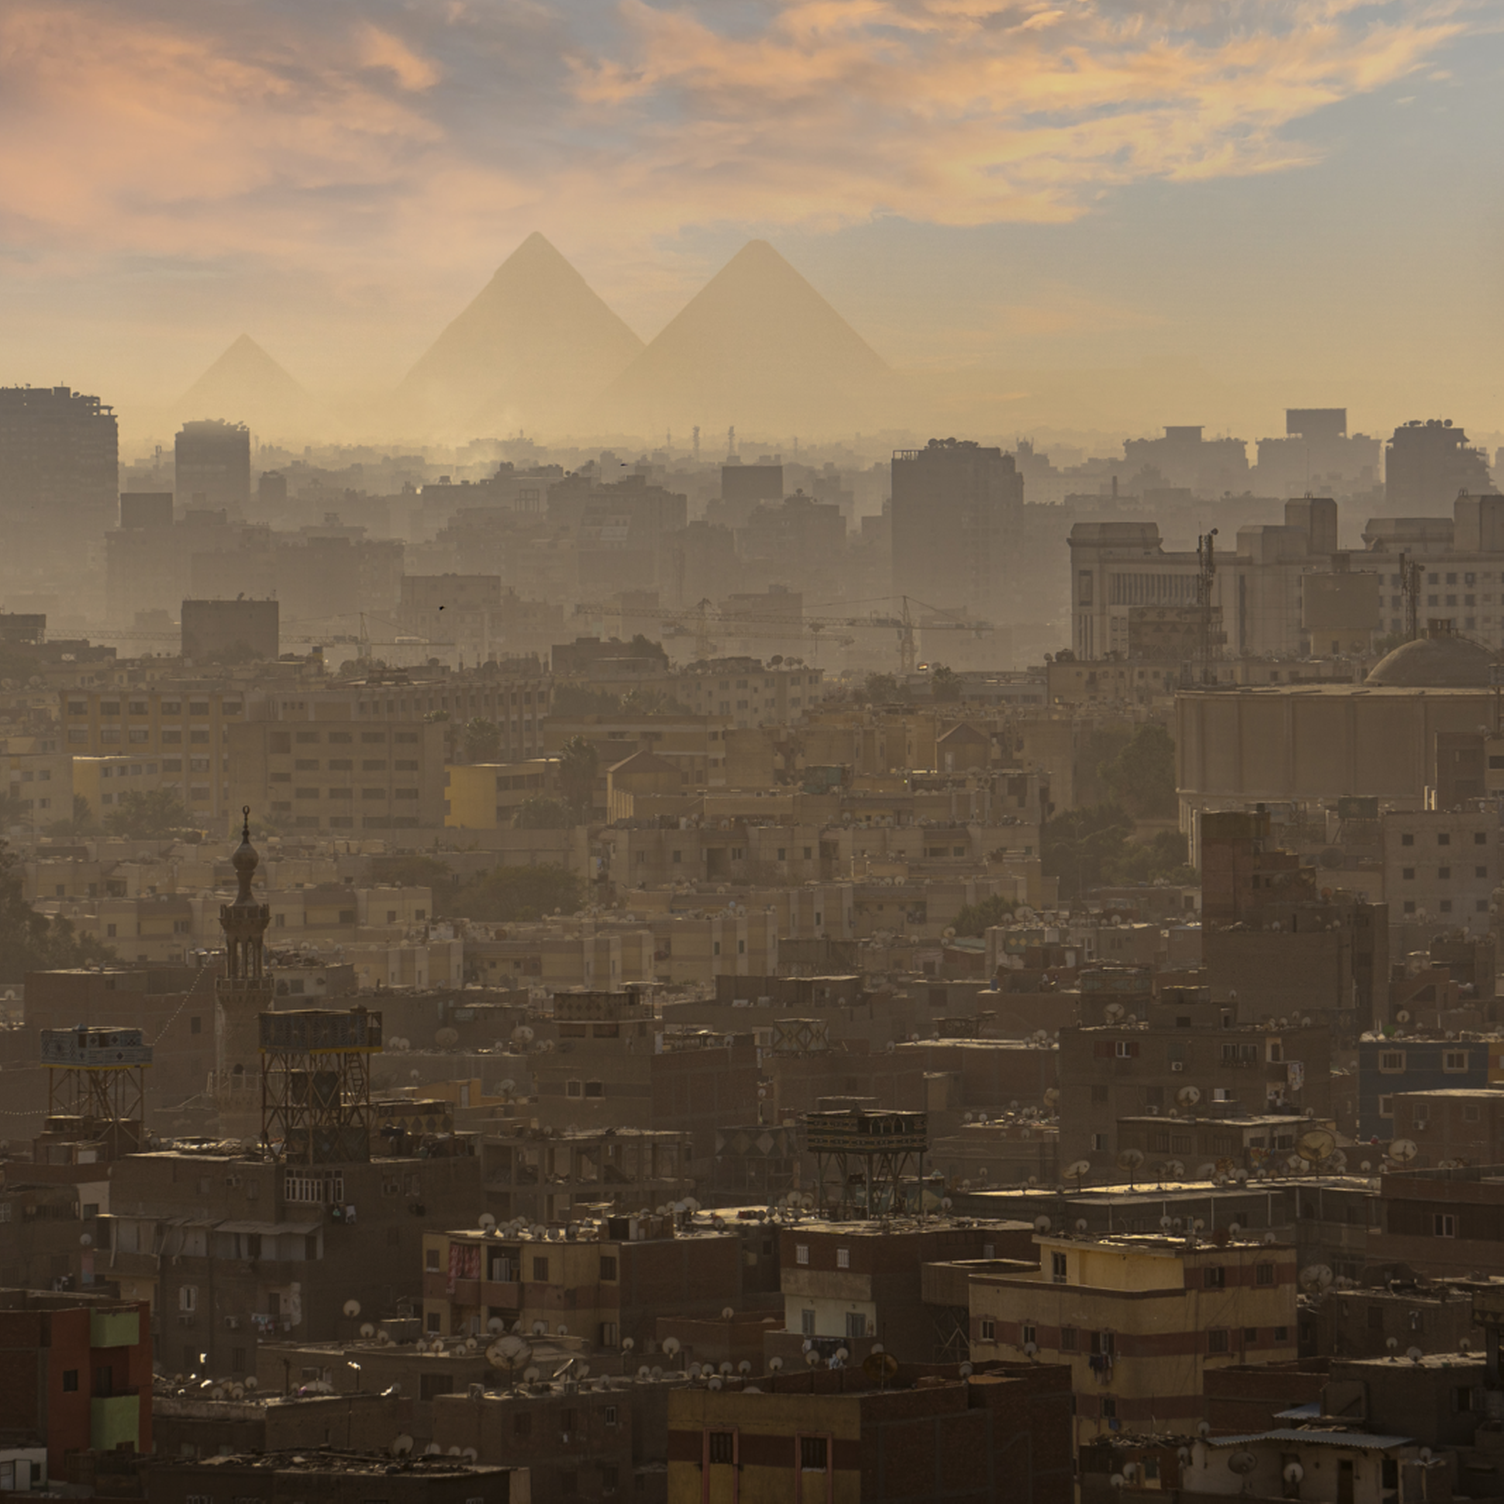 Vue du Caire avec la silhouette des pyramides en arrière-plan